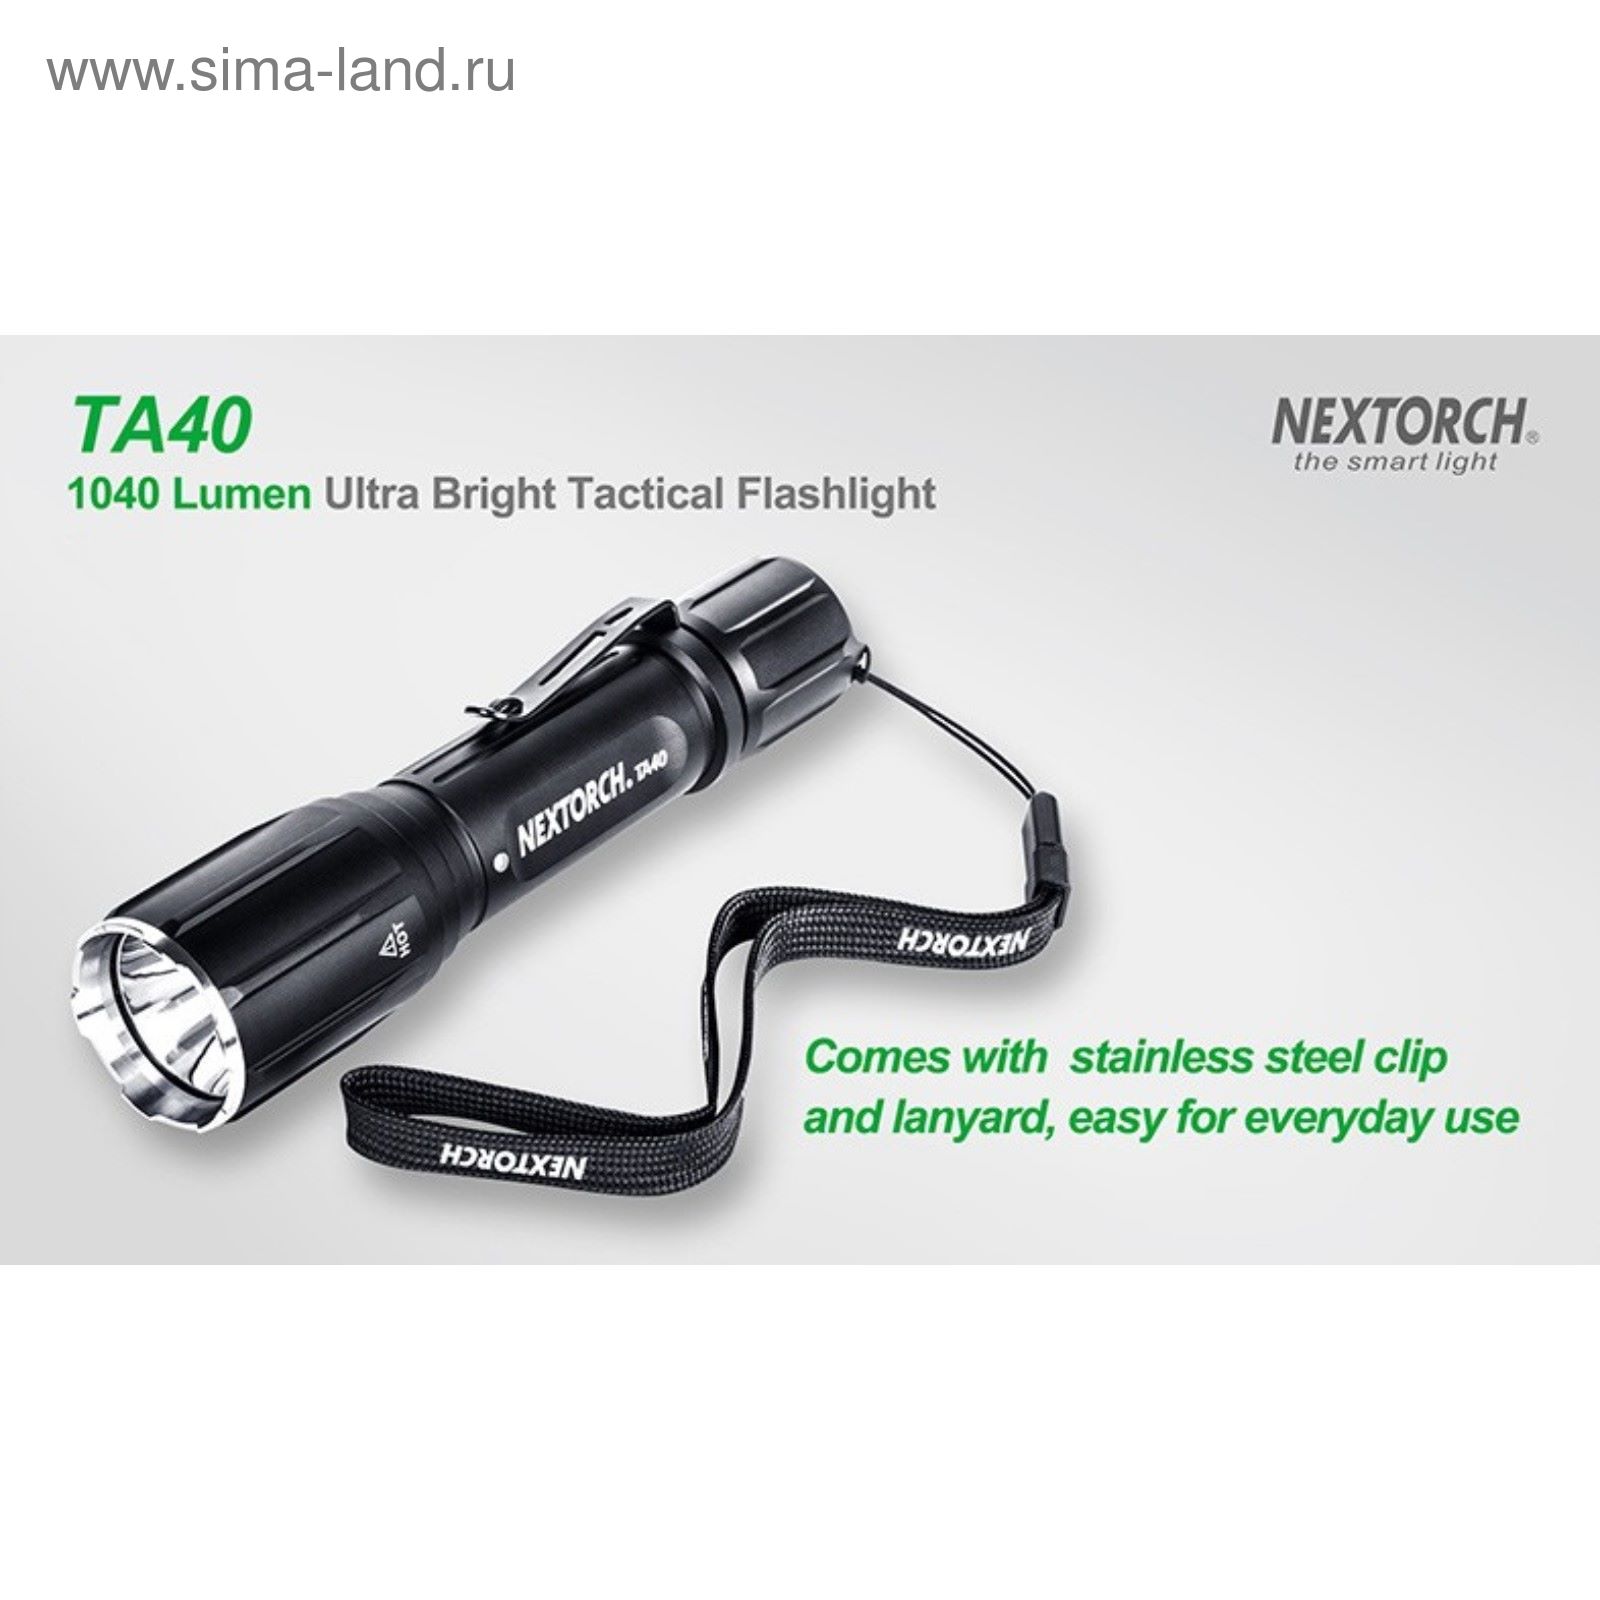 Подствольный фонарь TA40 светодиодный CREE, 1040 люм., 7 режимов, клипса + CR123A